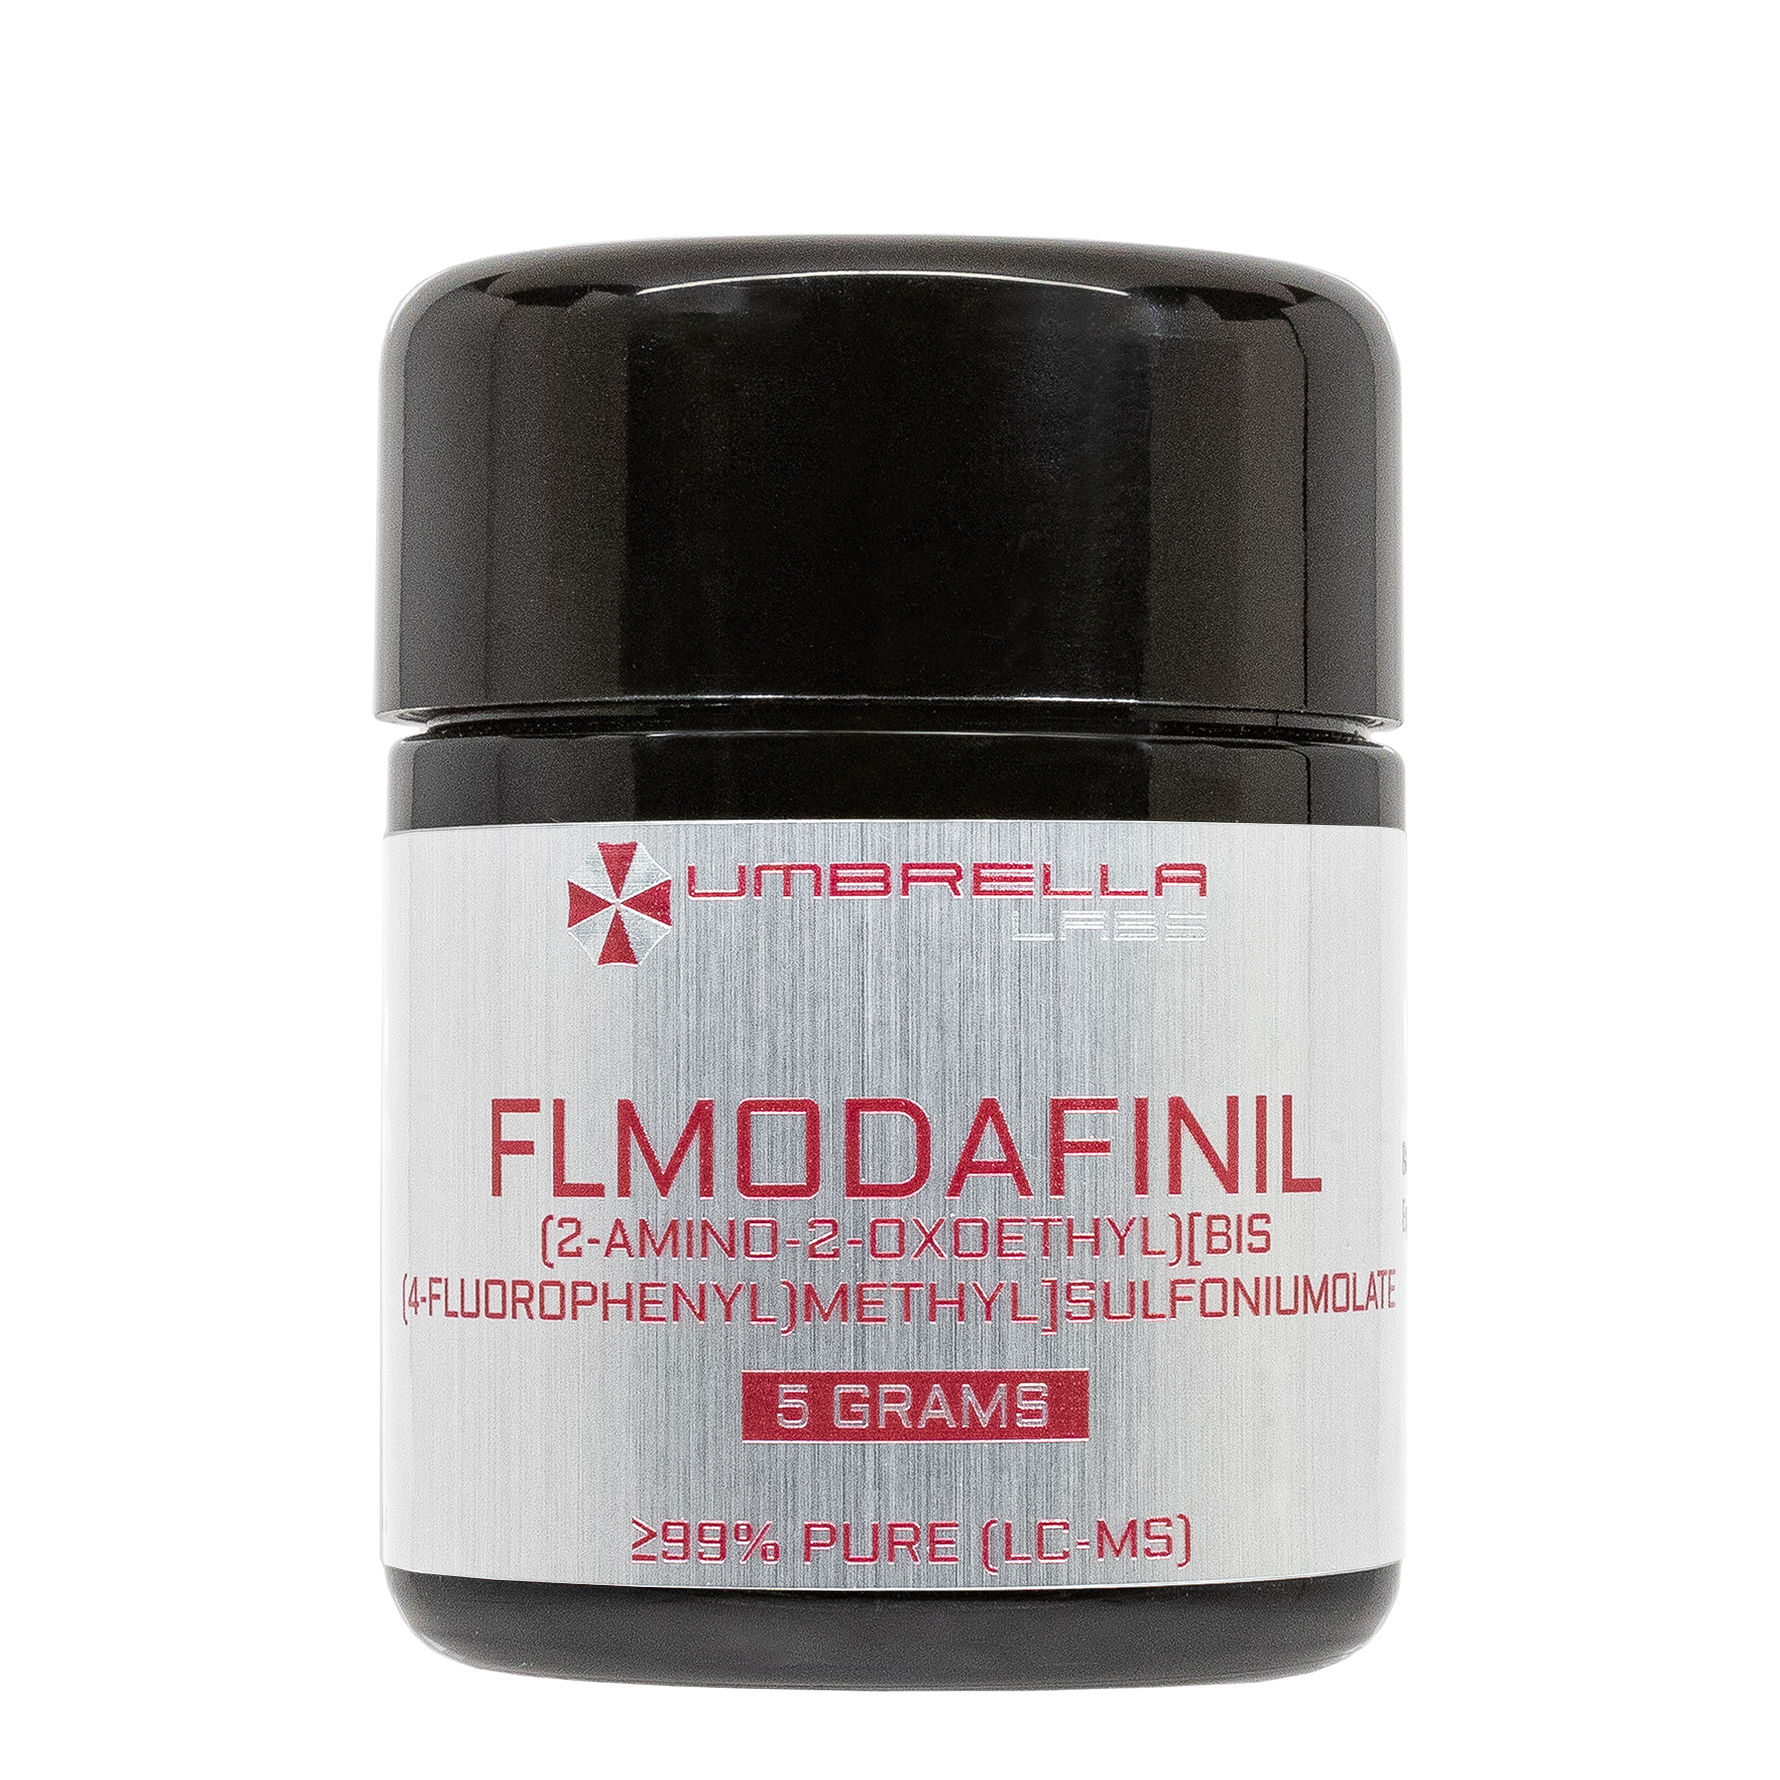 flmodafinil crl 40,940 (5 grams)